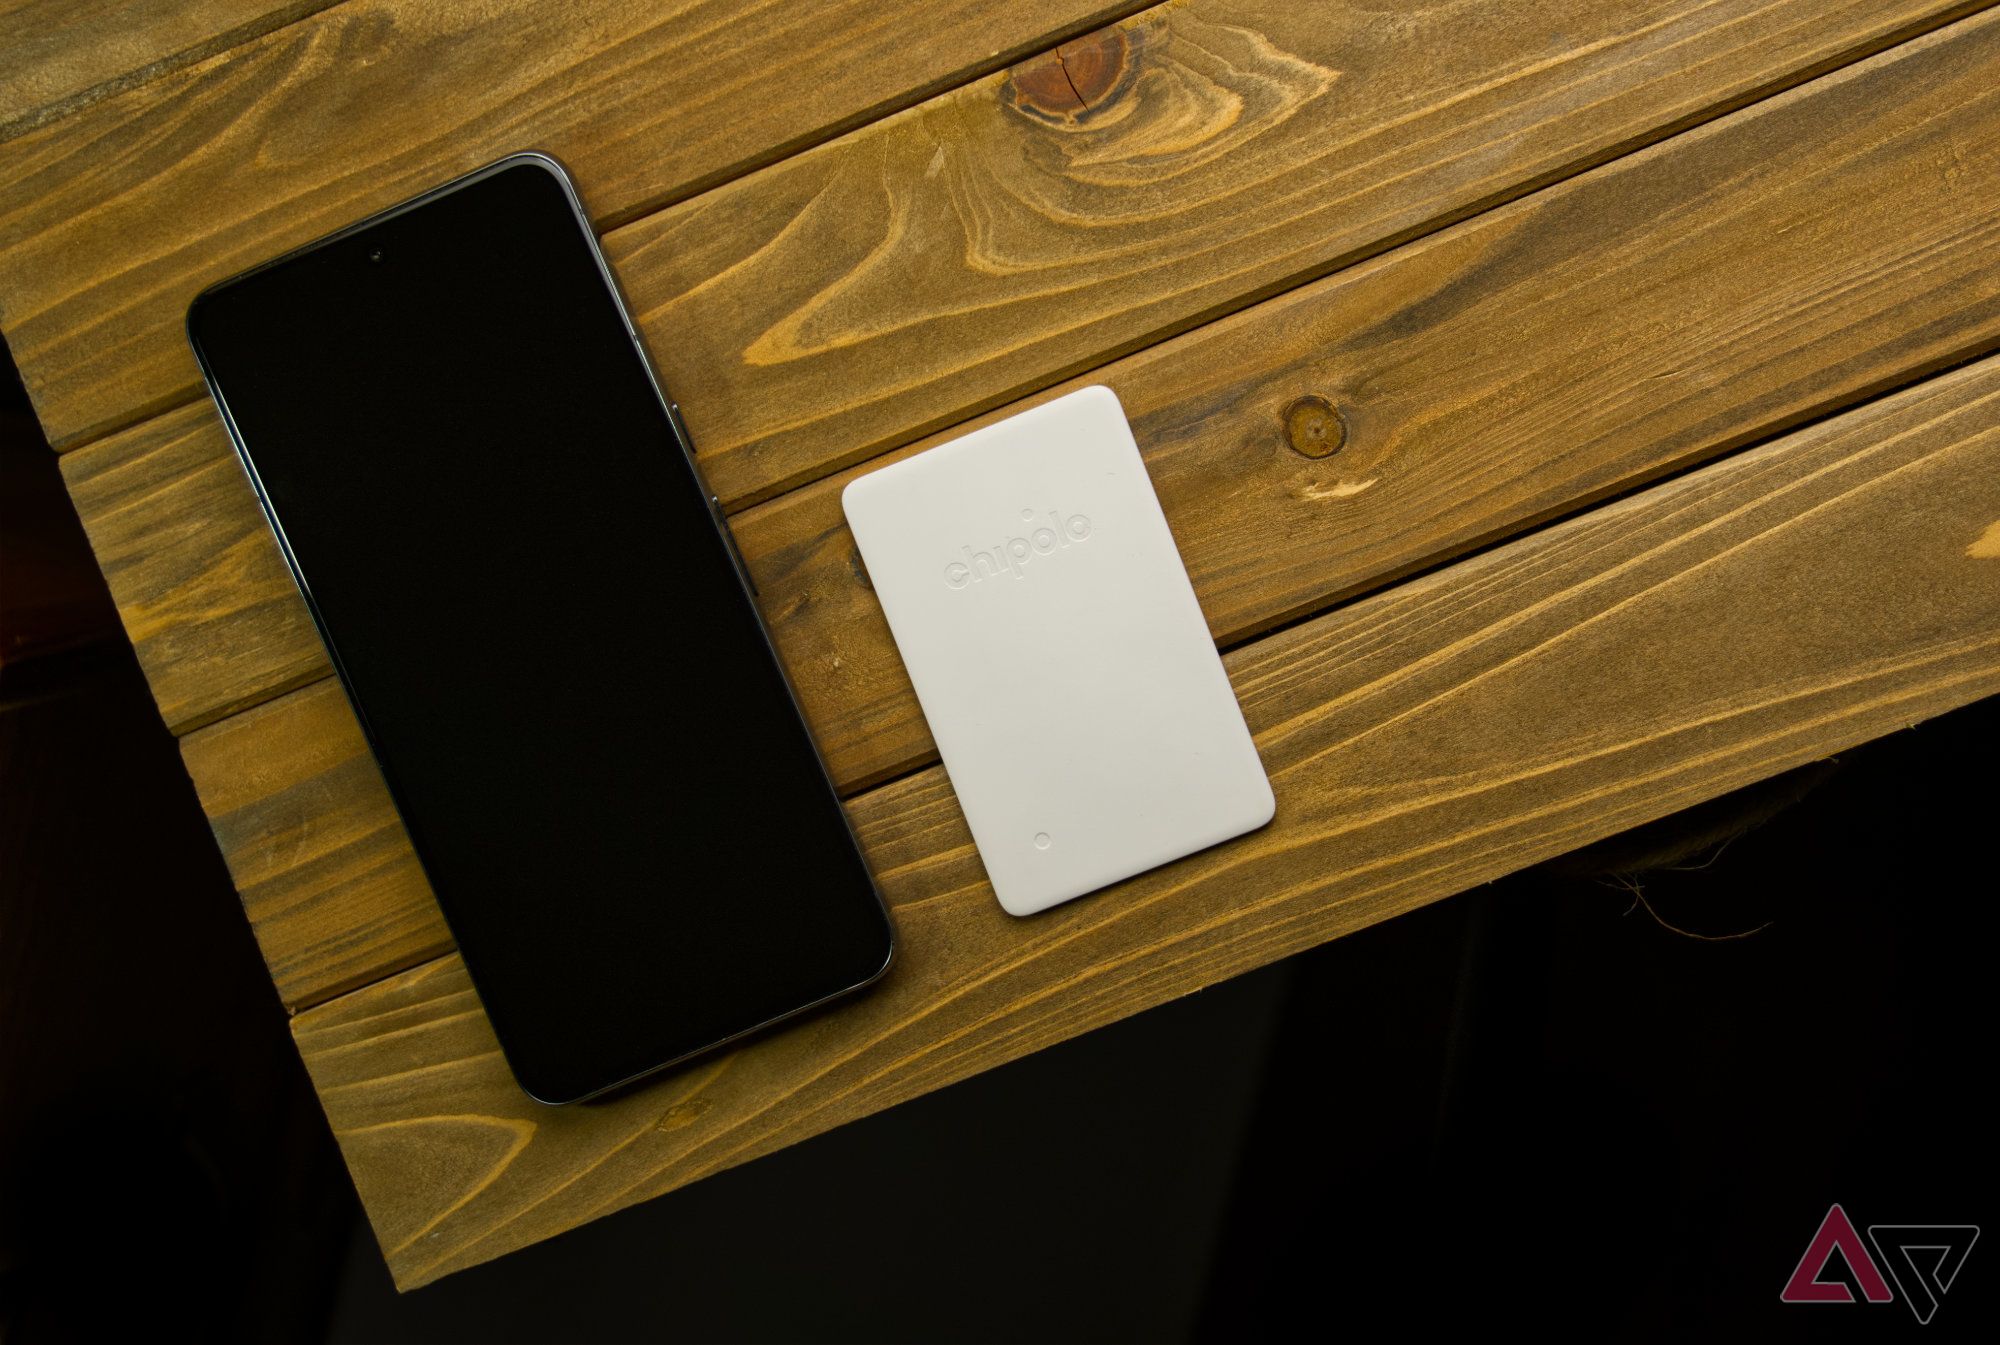 Chipolo CARD Point e um smartphone em uma prancha de madeira